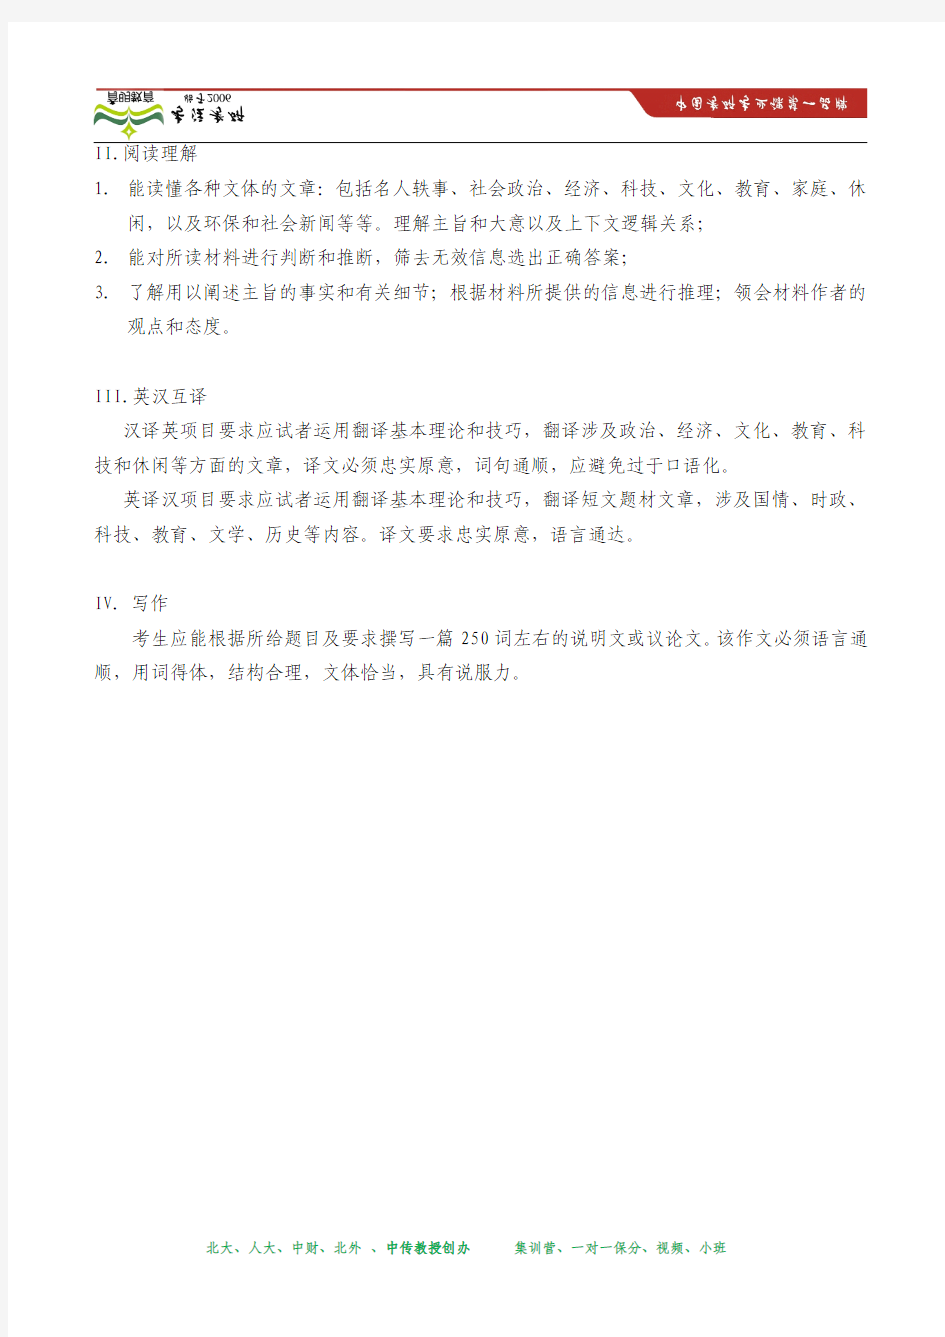 2014年 中国传媒大学研究生院硕士研究生入学考试《二外英语》考试大纲